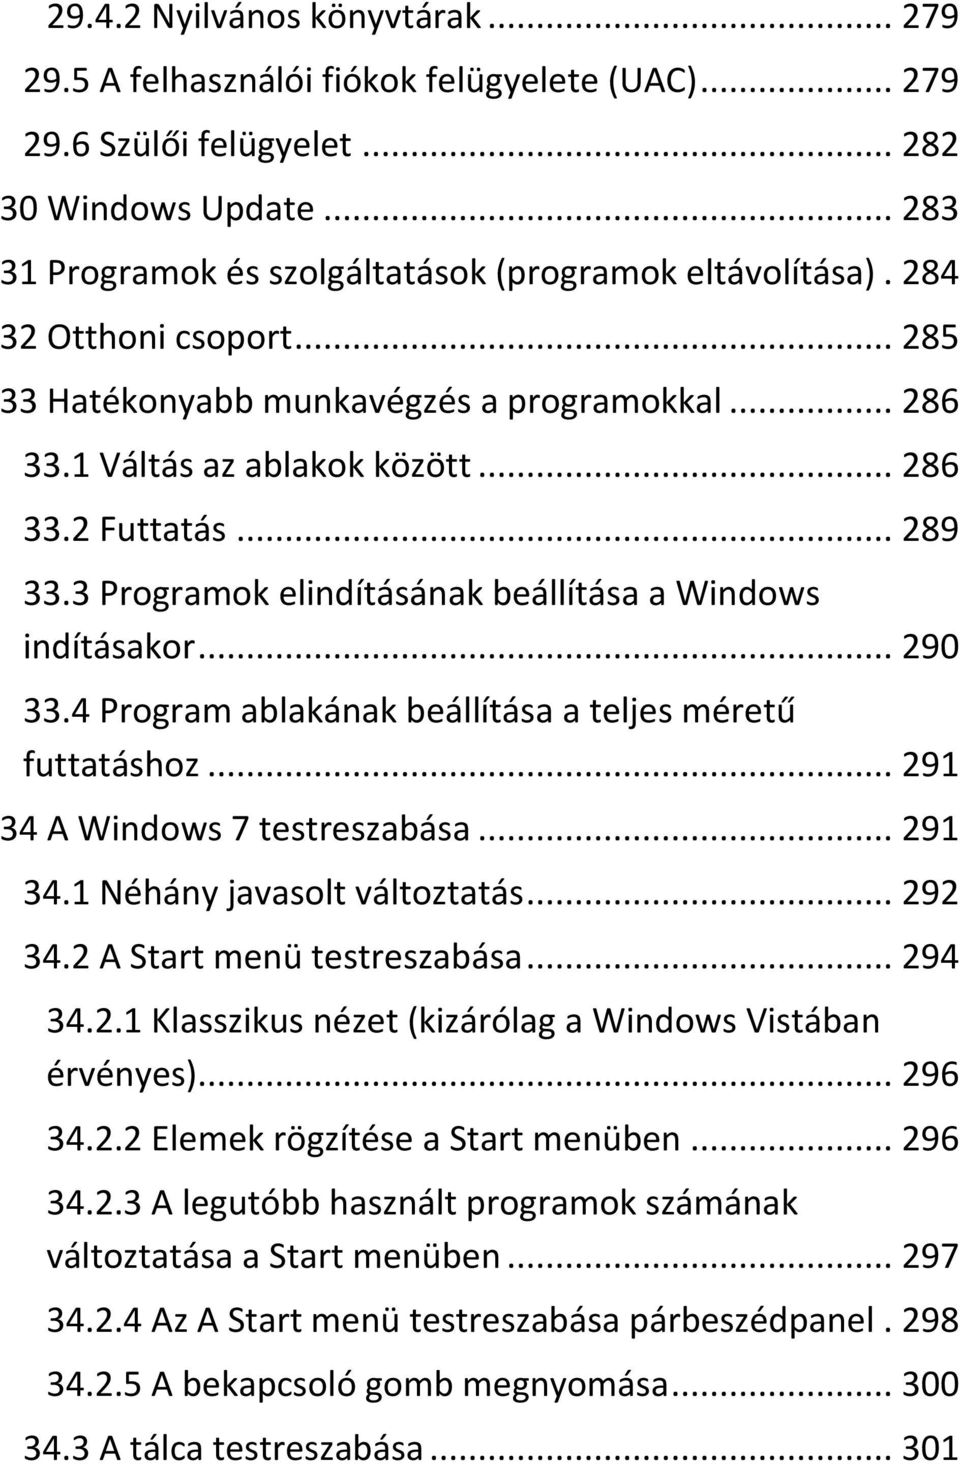 .. 290 33.4 Program ablakának beállítása a teljes méretű futtatáshoz... 291 34 A Windows 7 testreszabása... 291 34.1 Néhány javasolt változtatás... 292 34.2 A Start menü testreszabása... 294 34.2.1 Klasszikus nézet (kizárólag a Windows Vistában érvényes).